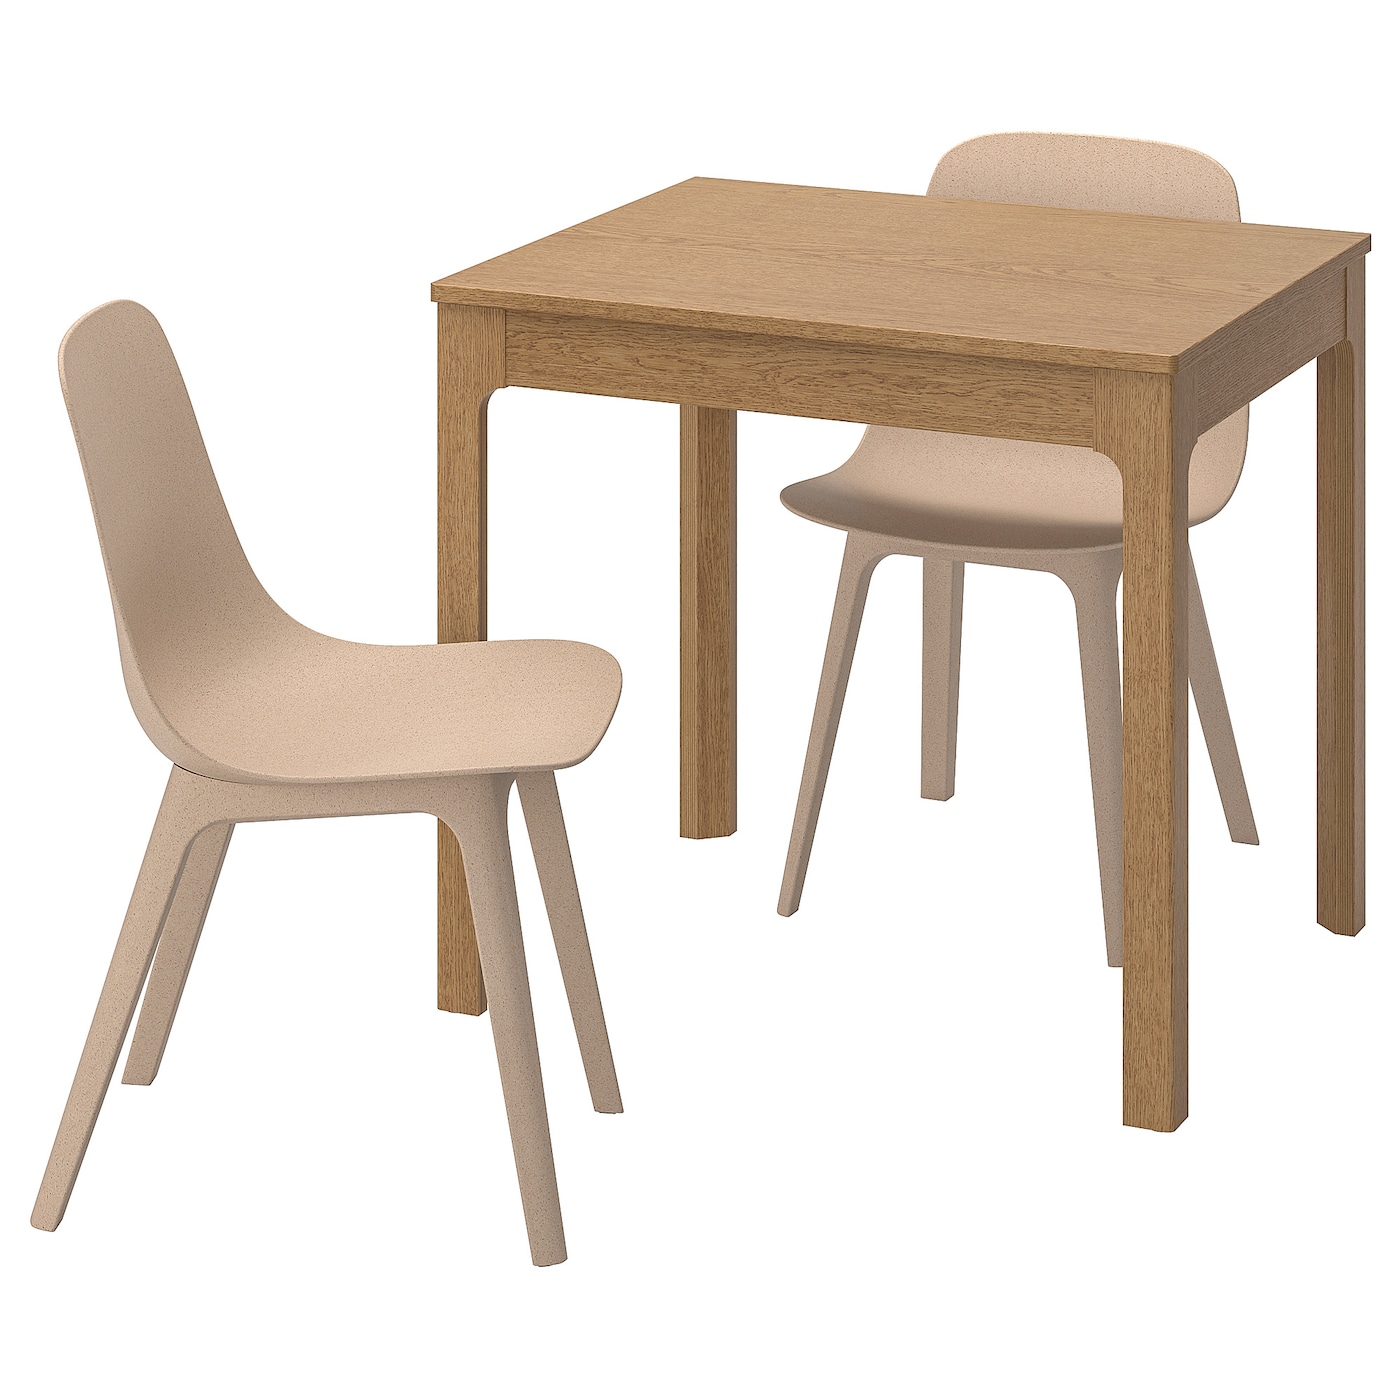 EKEDALEN / ODGER Tisch und 2 Stühle  - Essplatzgruppe - Möbel Ideen für dein Zuhause von Home Trends. Möbel Trends von Social Media Influencer für dein Skandi Zuhause.